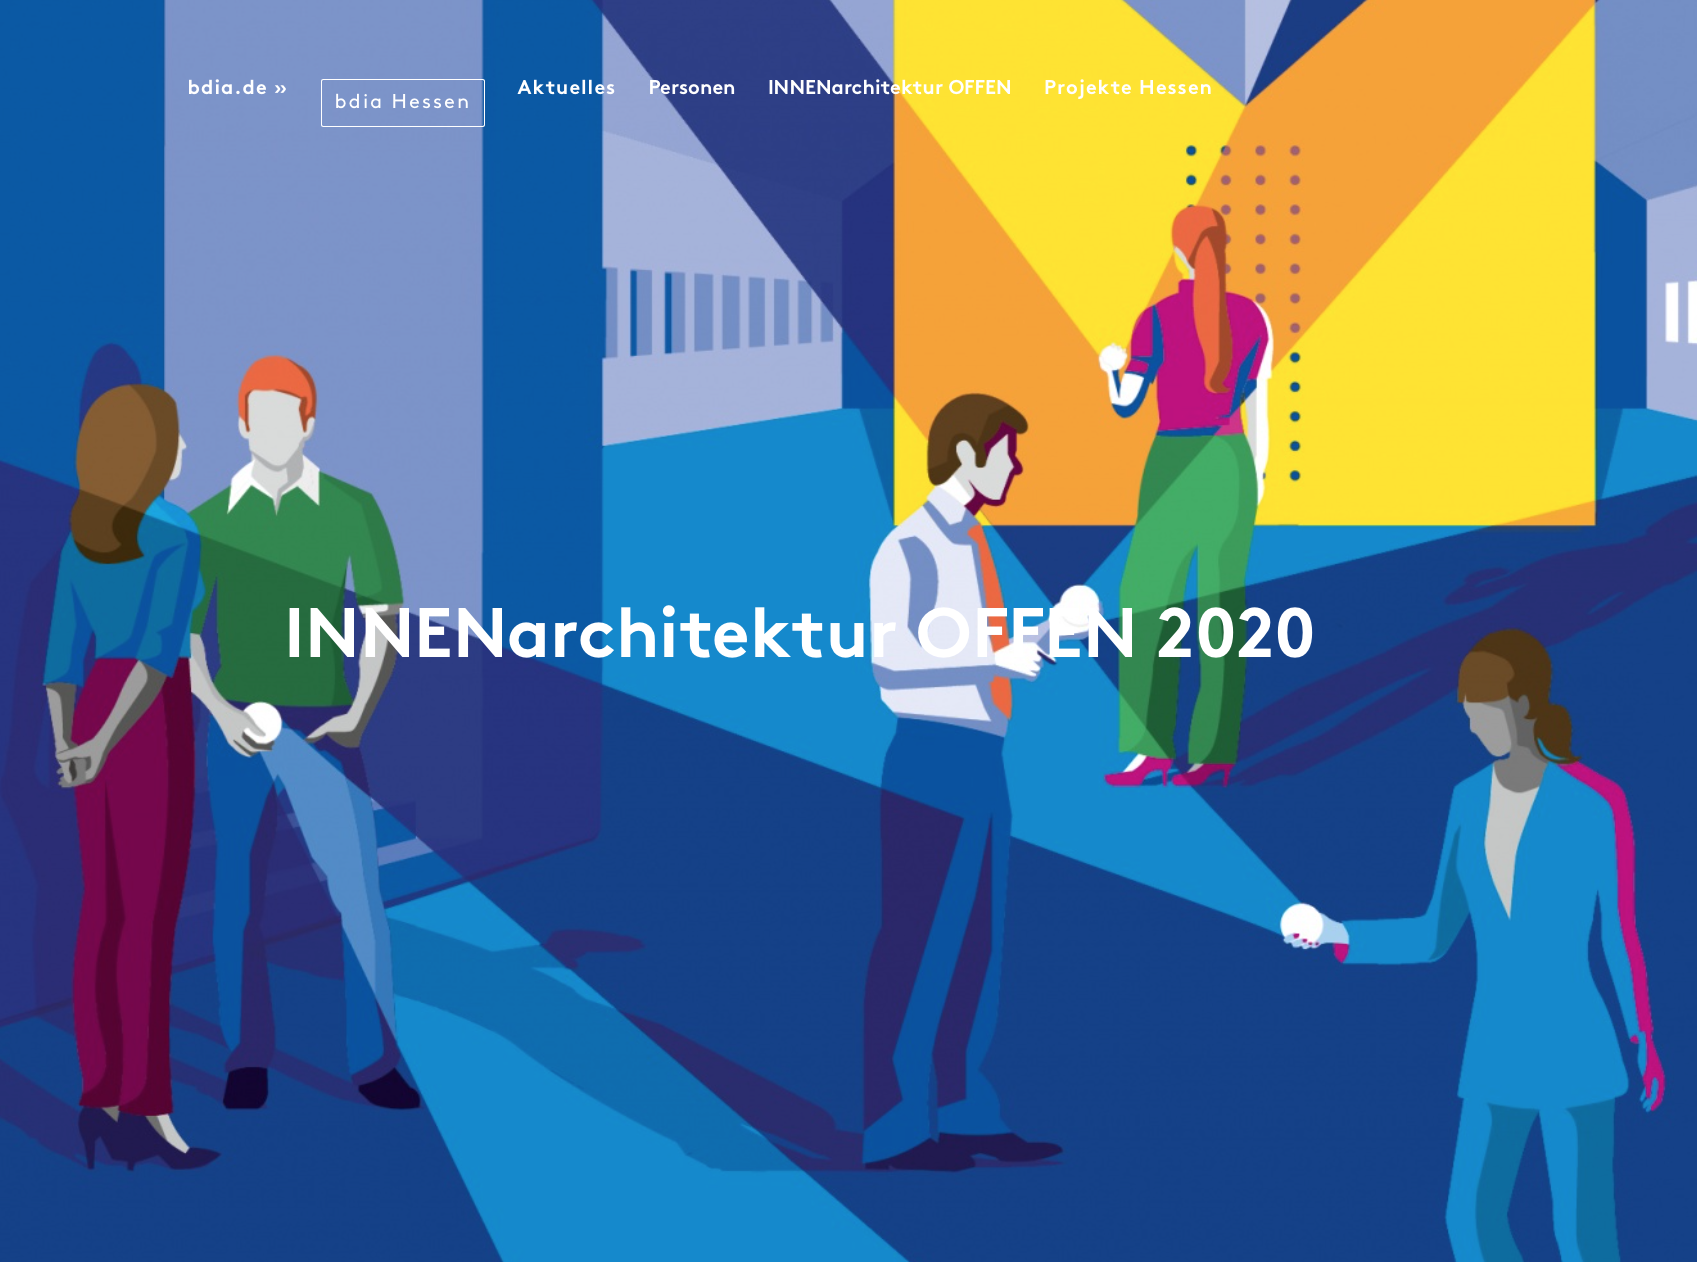 Sponsoring "innenarchitektur offen 2020" des bdia (Bund Deutscher Innenarchitekten)